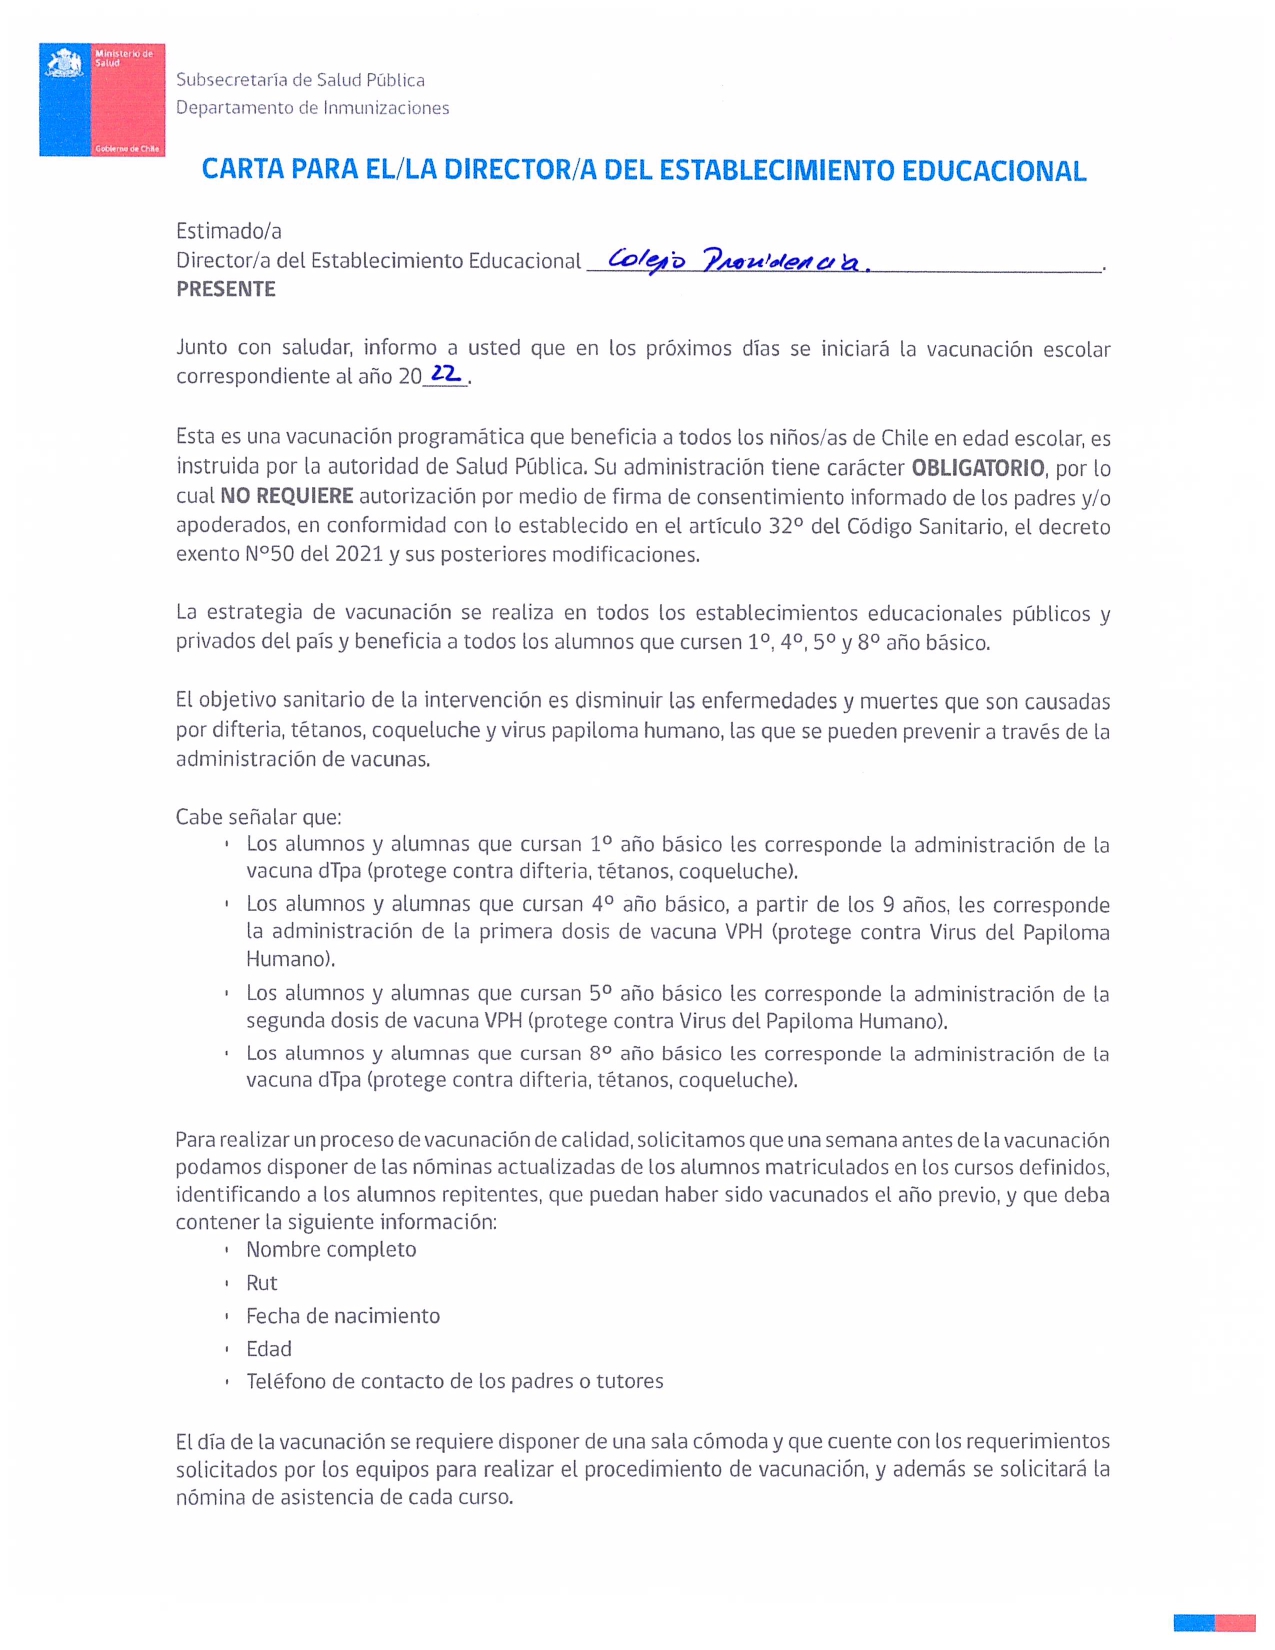 Carta director campaña escolar 2022 Colegio Providencia 1 page 0001